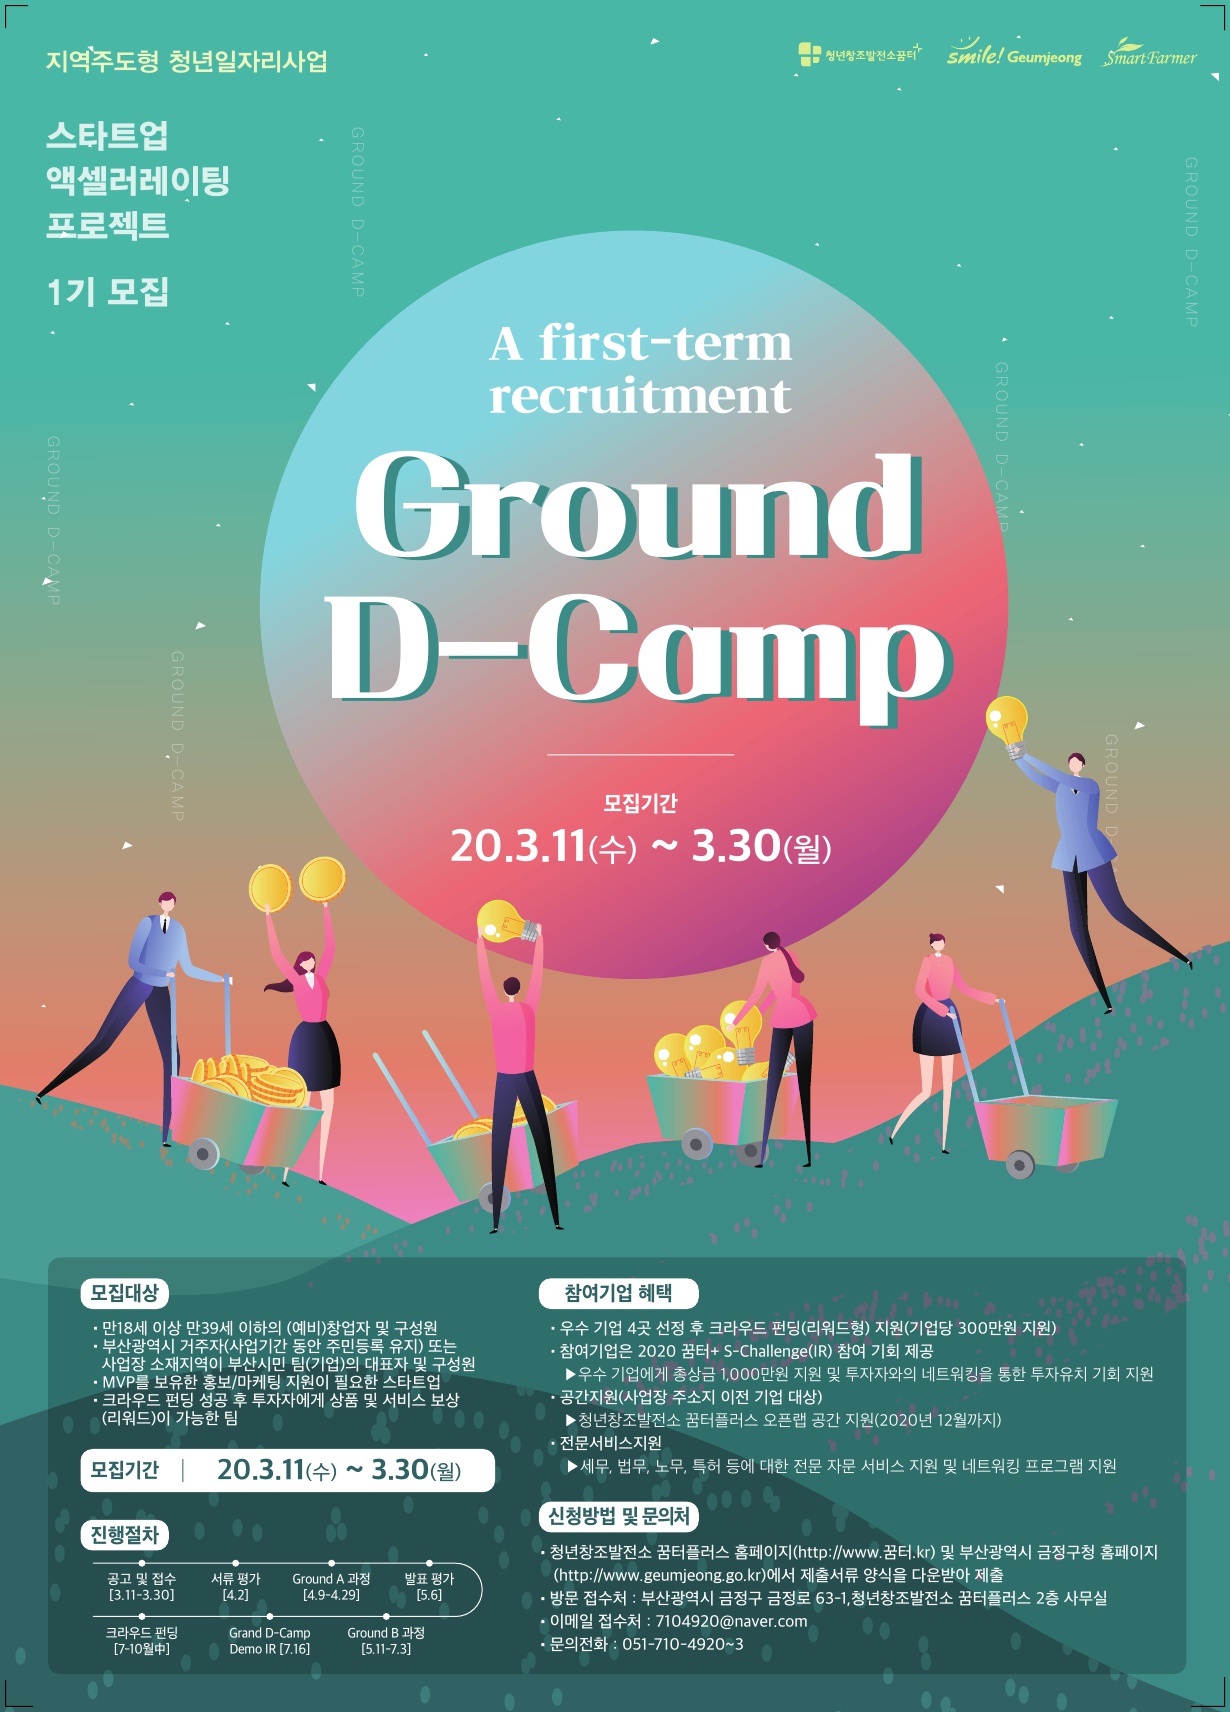 스타트업 액셀러레이팅 프로젝트 Ground D-Camp 포스터.jpg